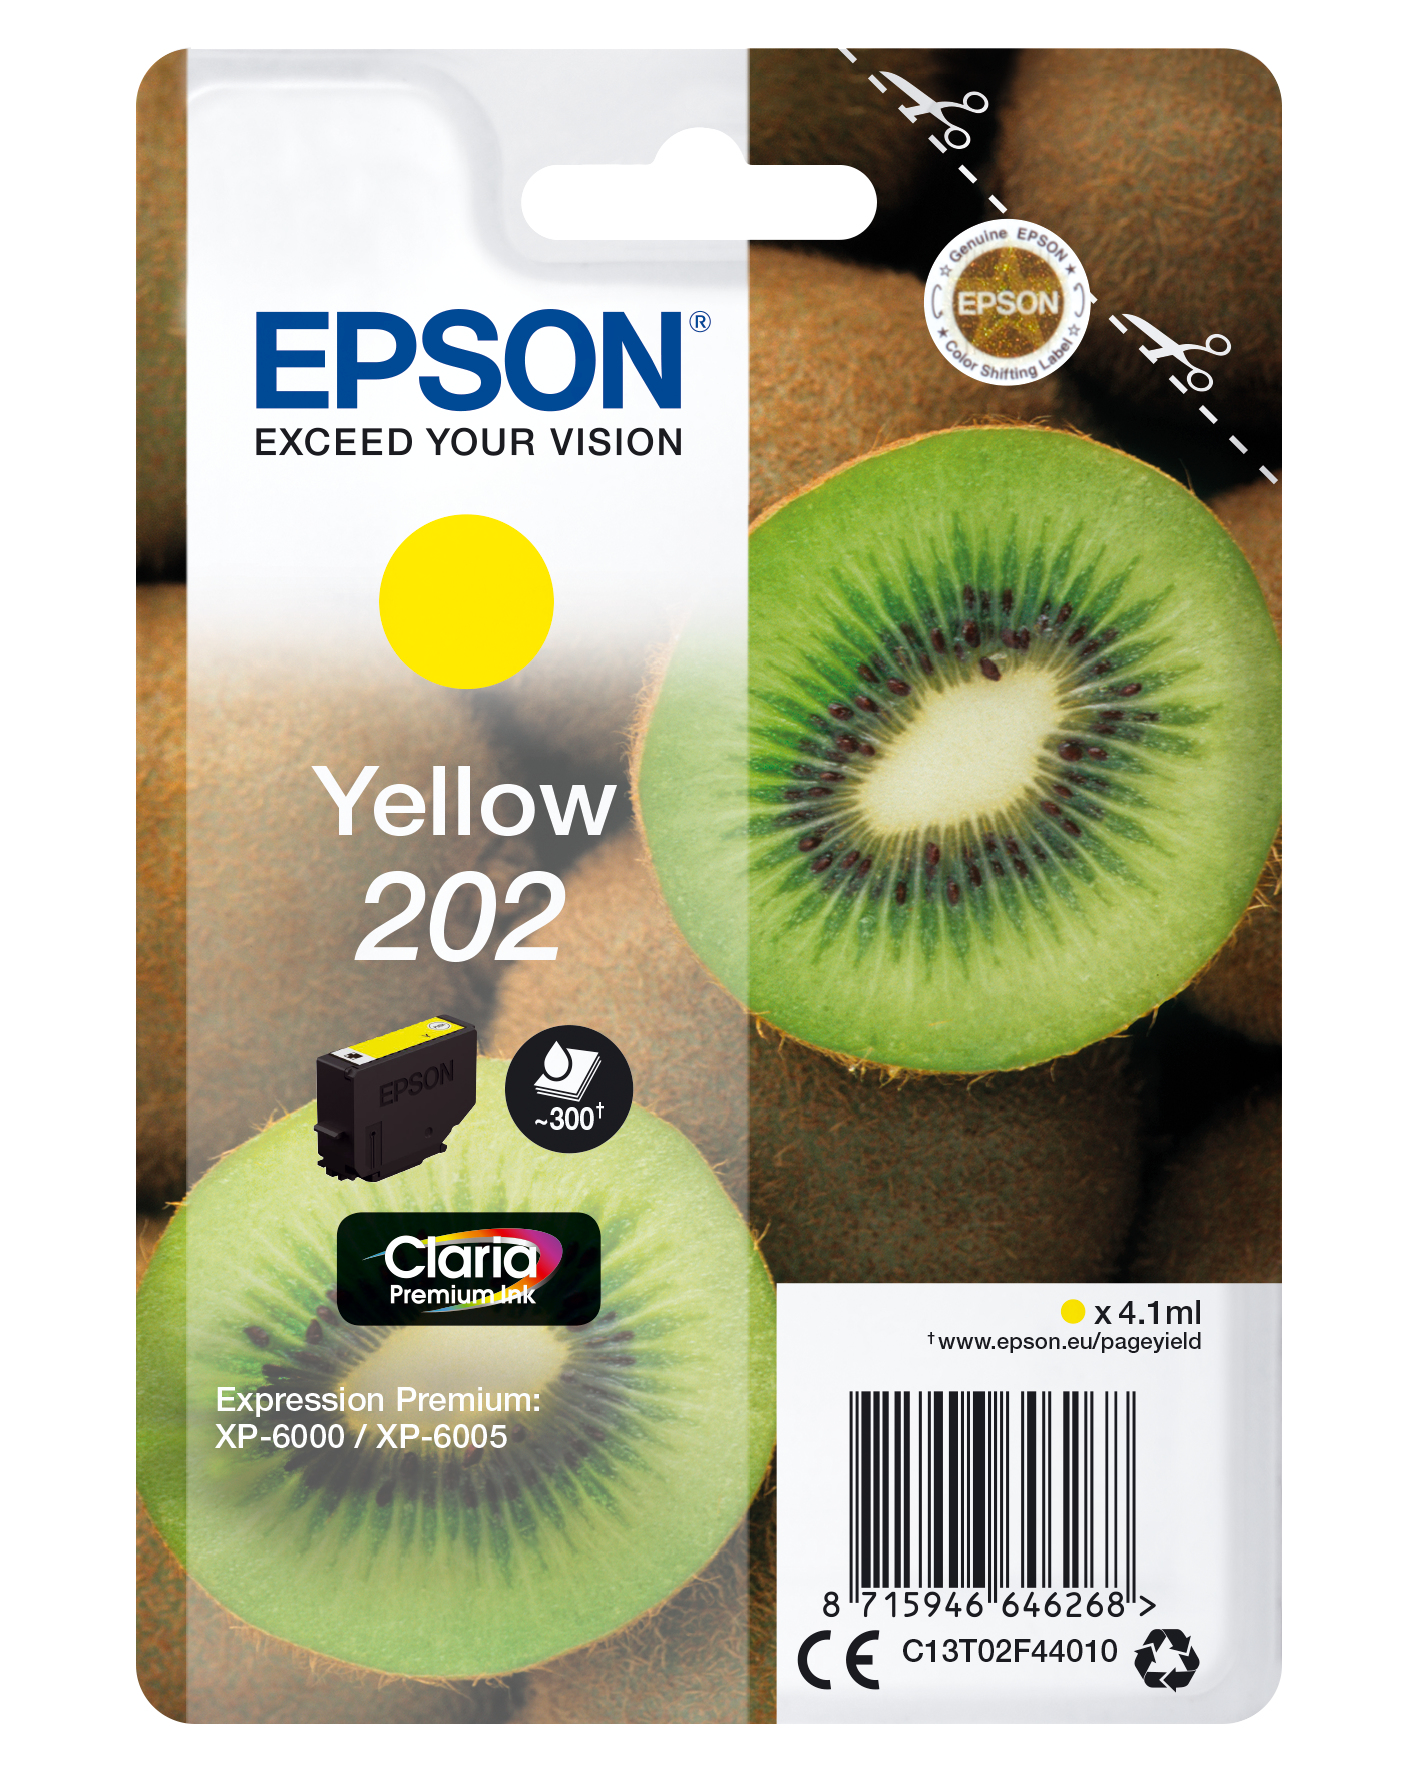 Epson Kiwi Singlepack Yellow 202 Claria Premium Ink - Standardertrag - Tinte auf Pigmentbasis - 4,1 ml - 300 Seiten - 1 Stück(e)